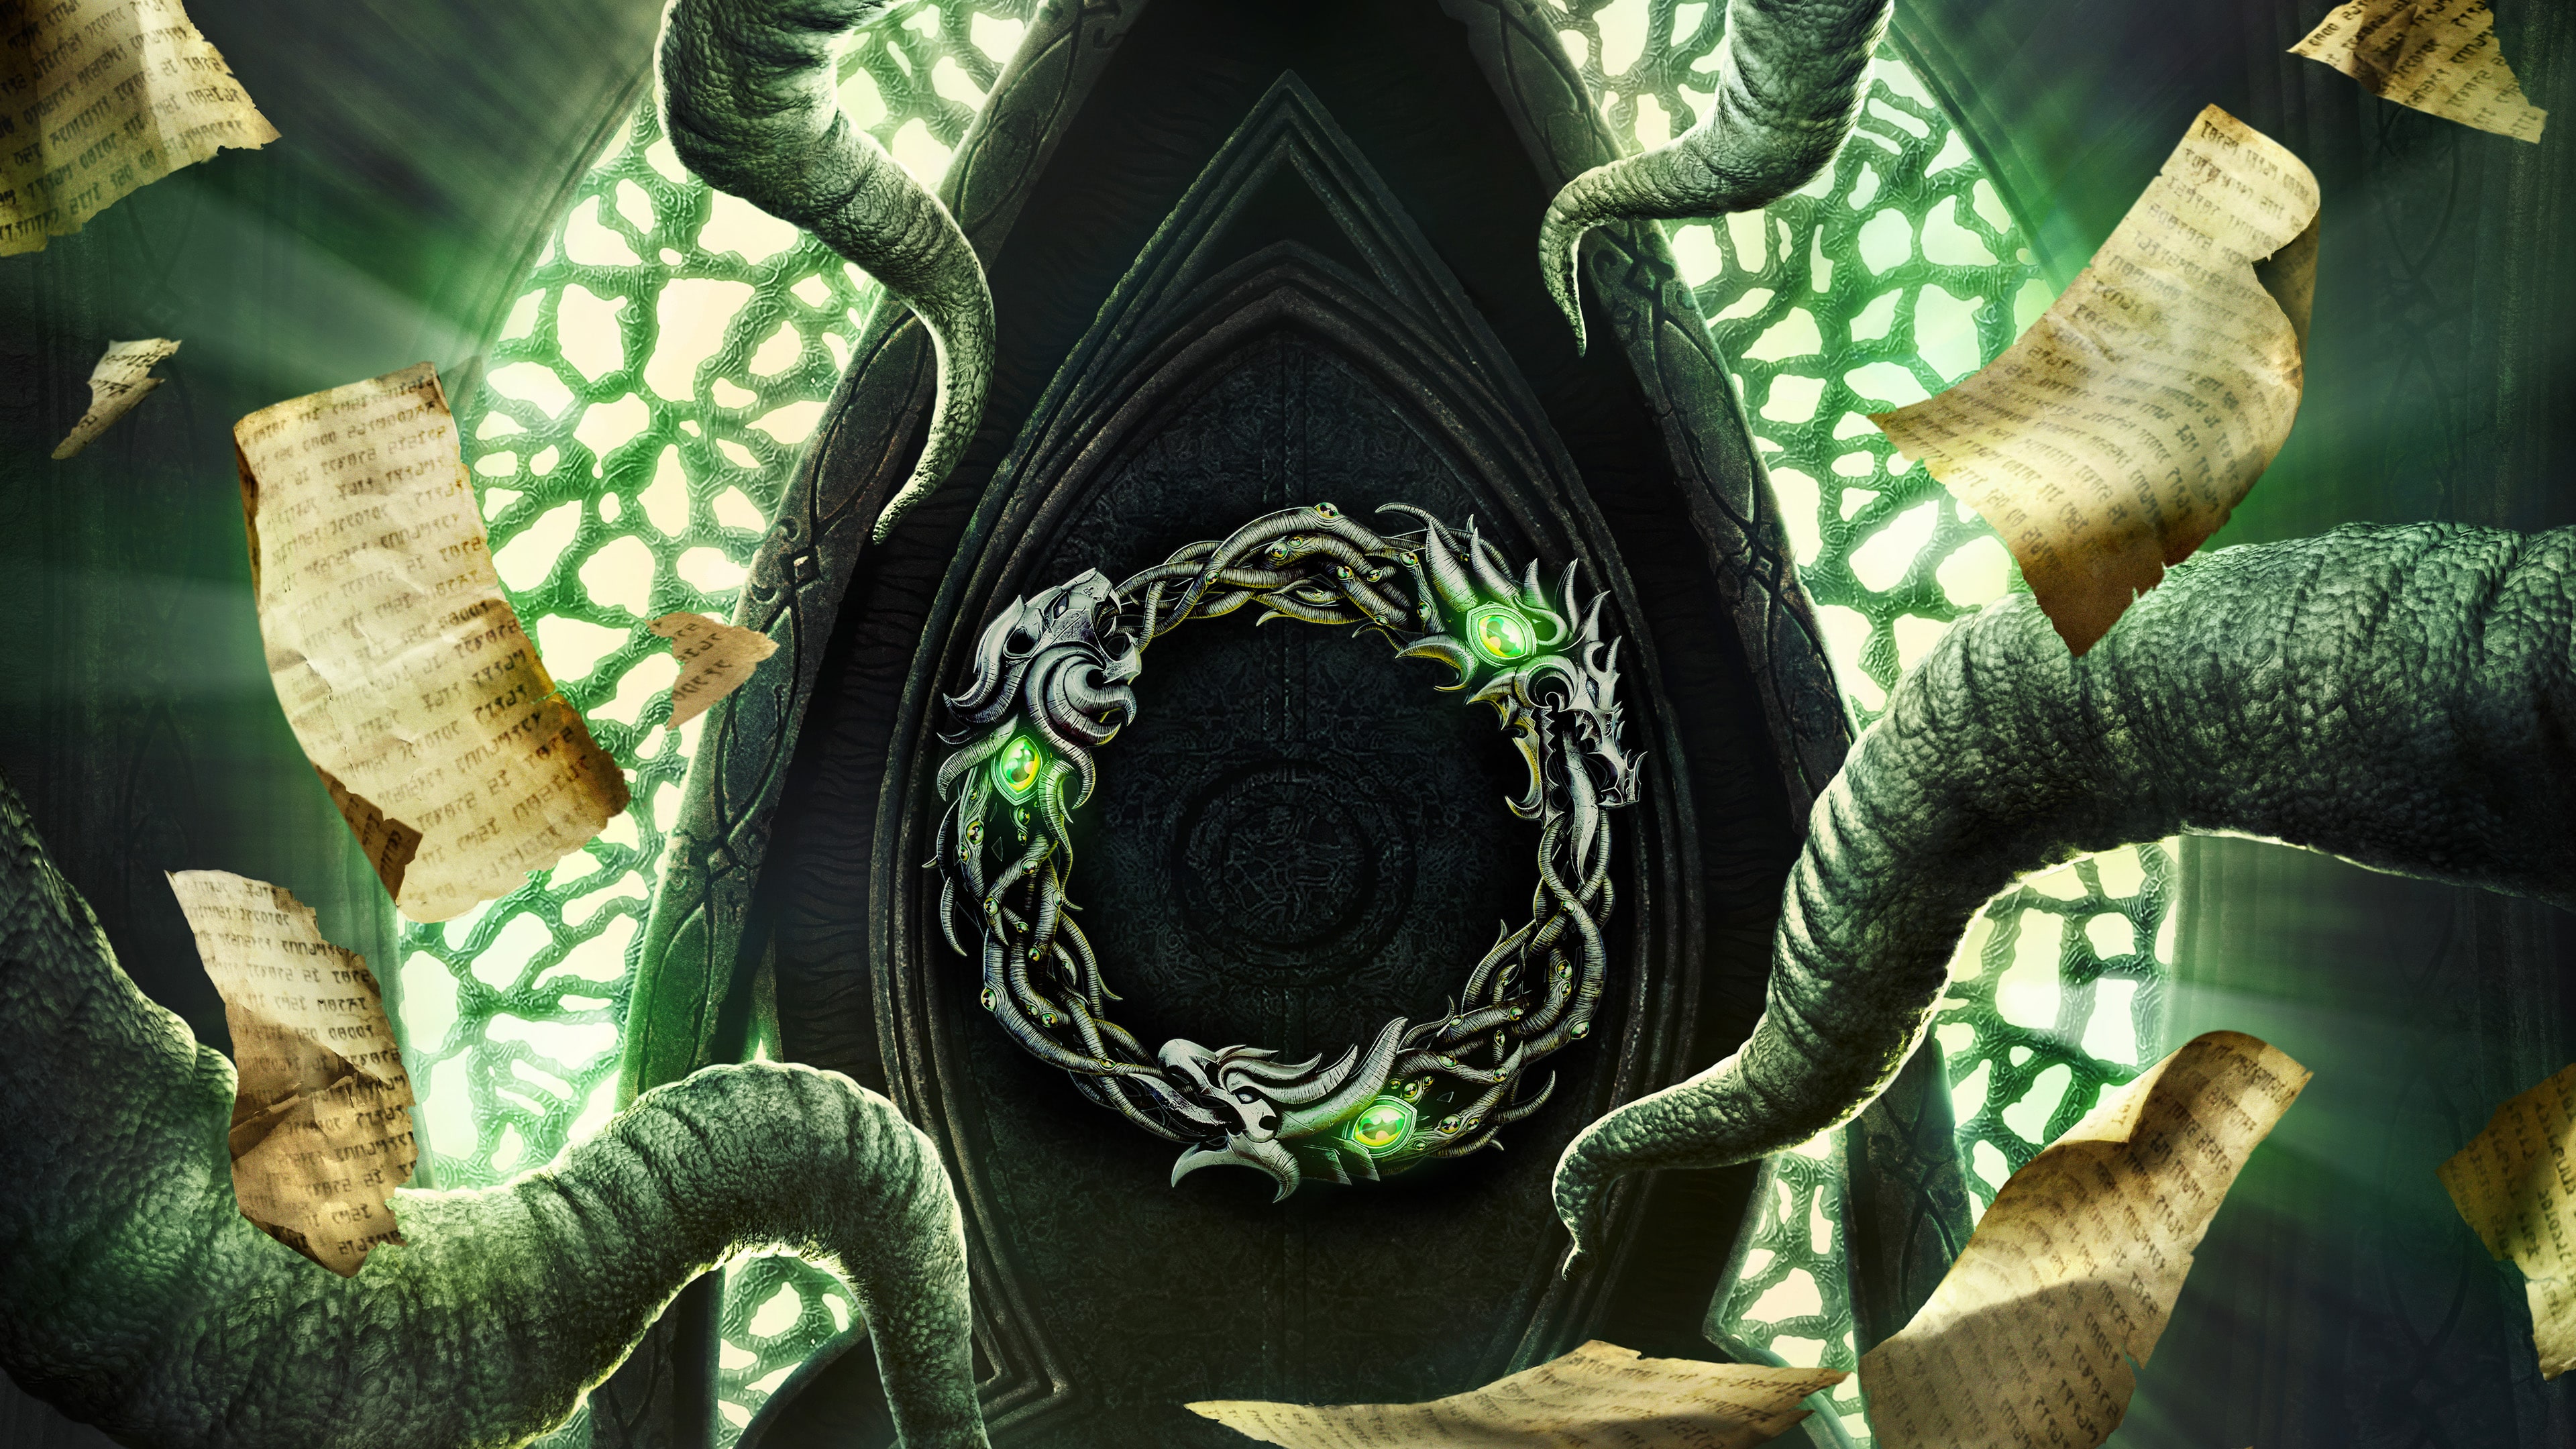 The Elder Scrolls Online Deluxe Upgrade: Necrom (추가 콘텐츠)